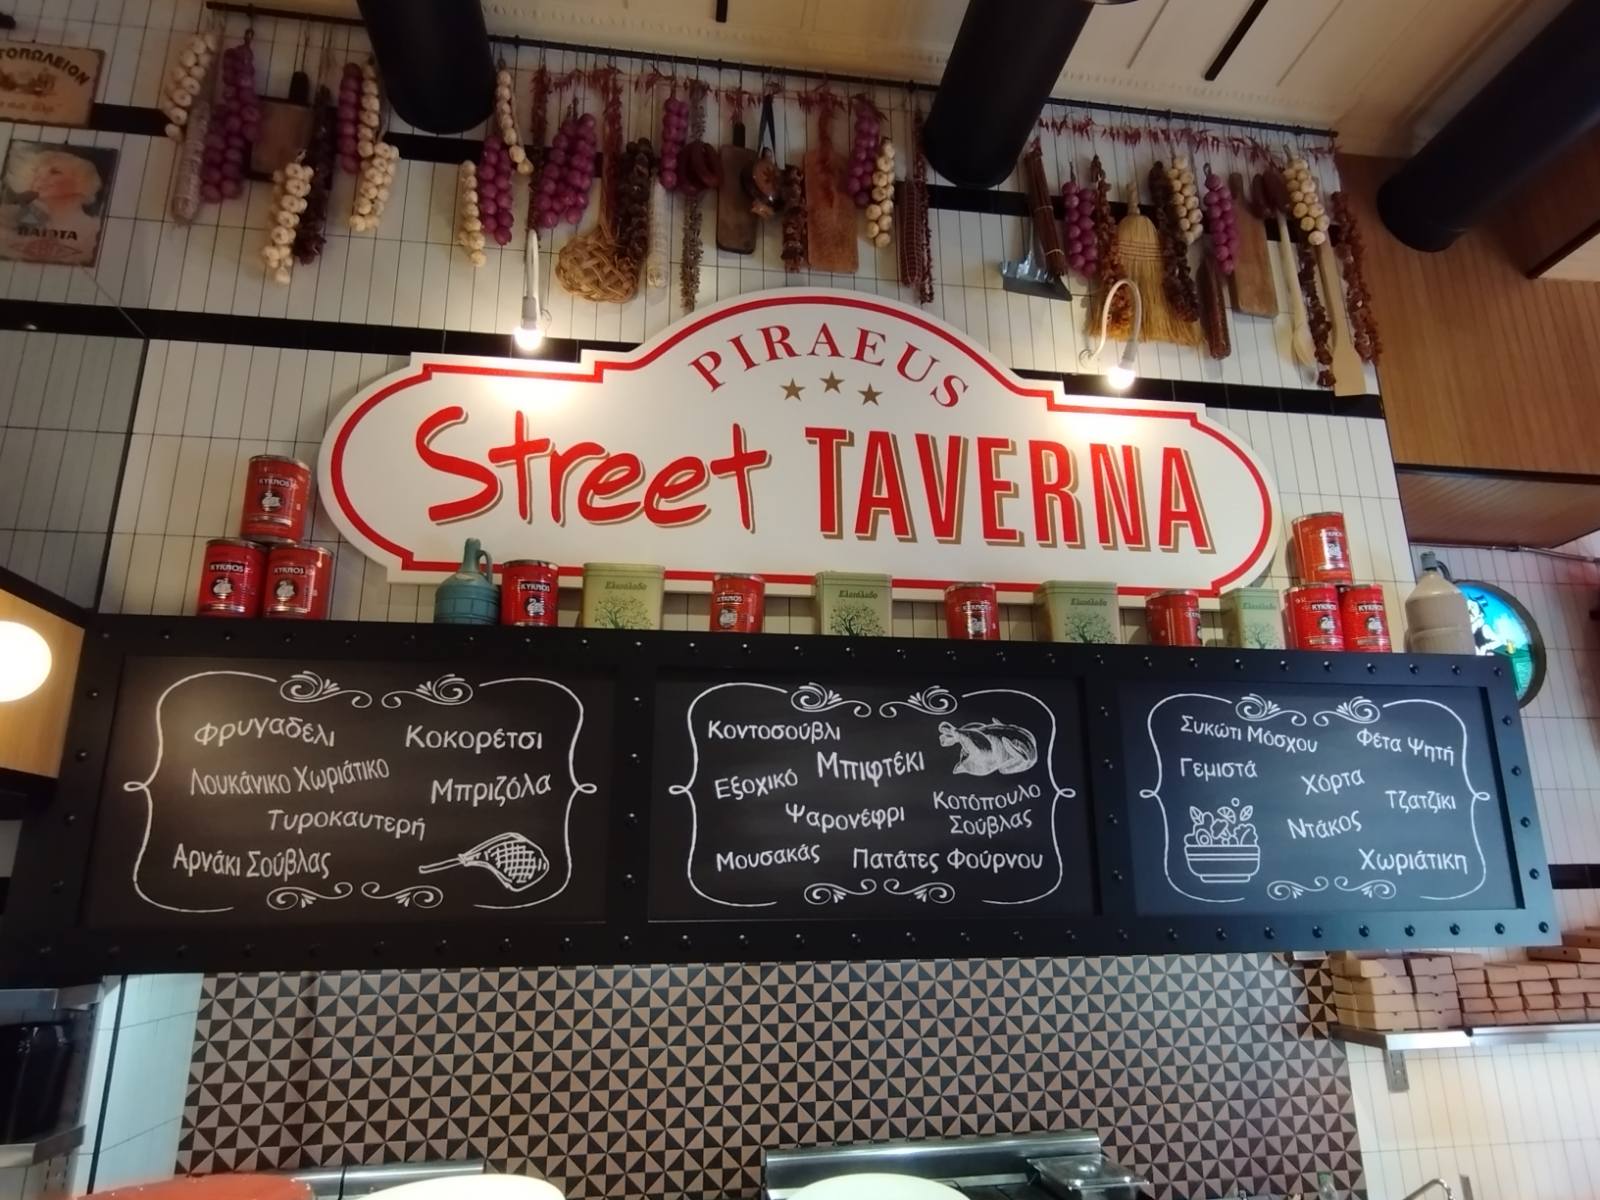 Το bestnews.gr ανακάλυψε το Street Taverna στον Πειραιά